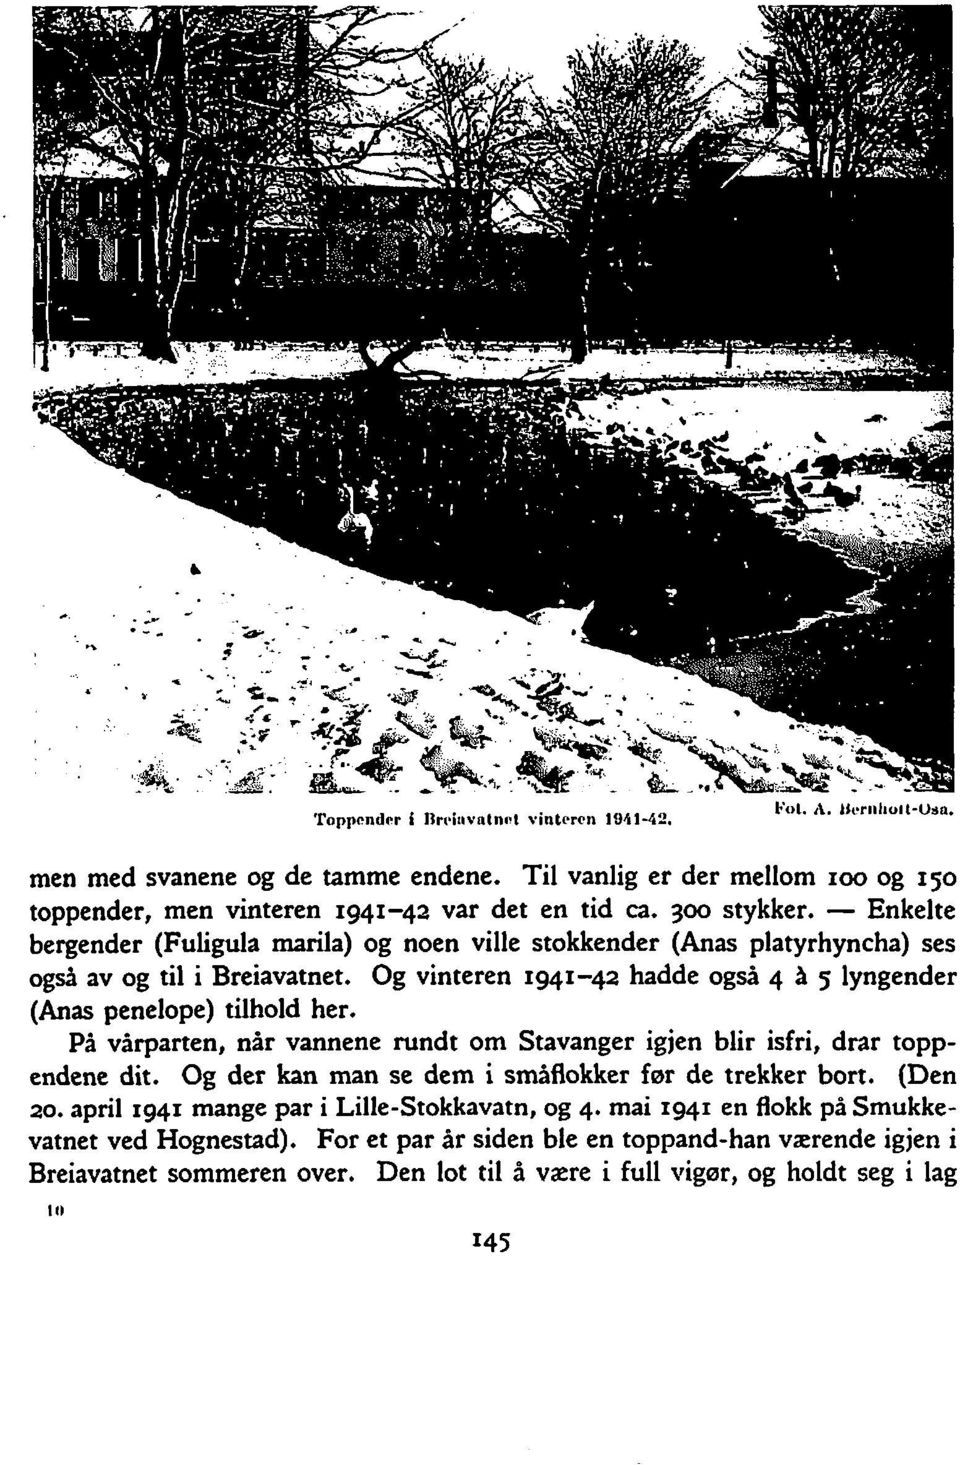 Og vinteren 1941-42 hadde også 4 A g lyngender (Anas penelope) tilhold her. PA varparten, når vannene rundt om Stavanger igjen blir isfri, drar toppendene dit.